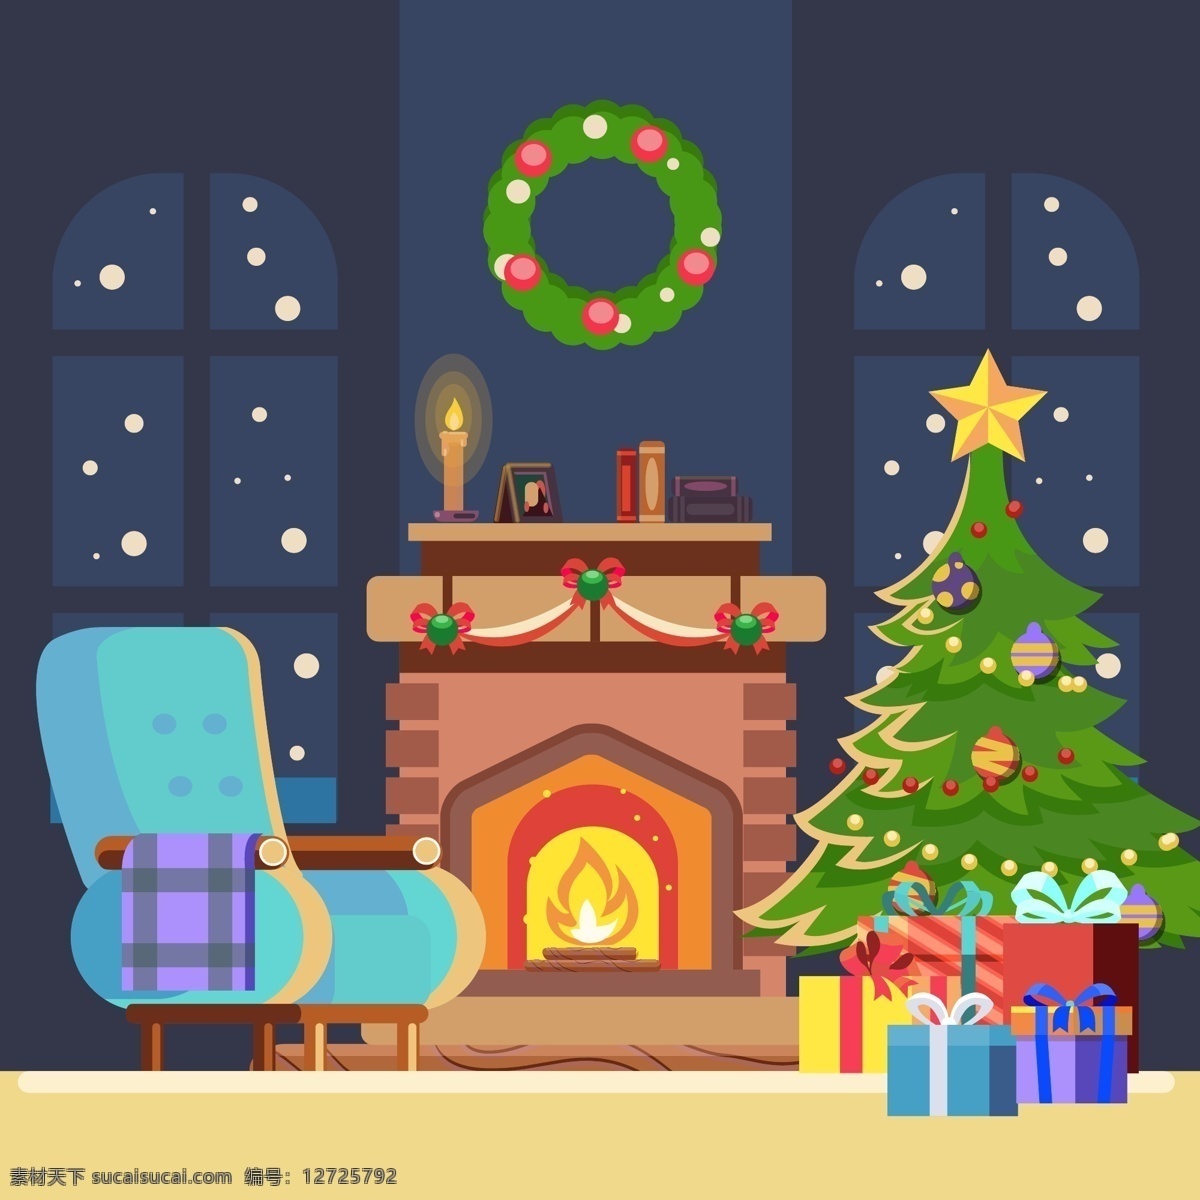 圣诞节 背景 壁炉 壁炉素材 圣诞节背景 圣诞节素材 圣诞树 树木 椅子